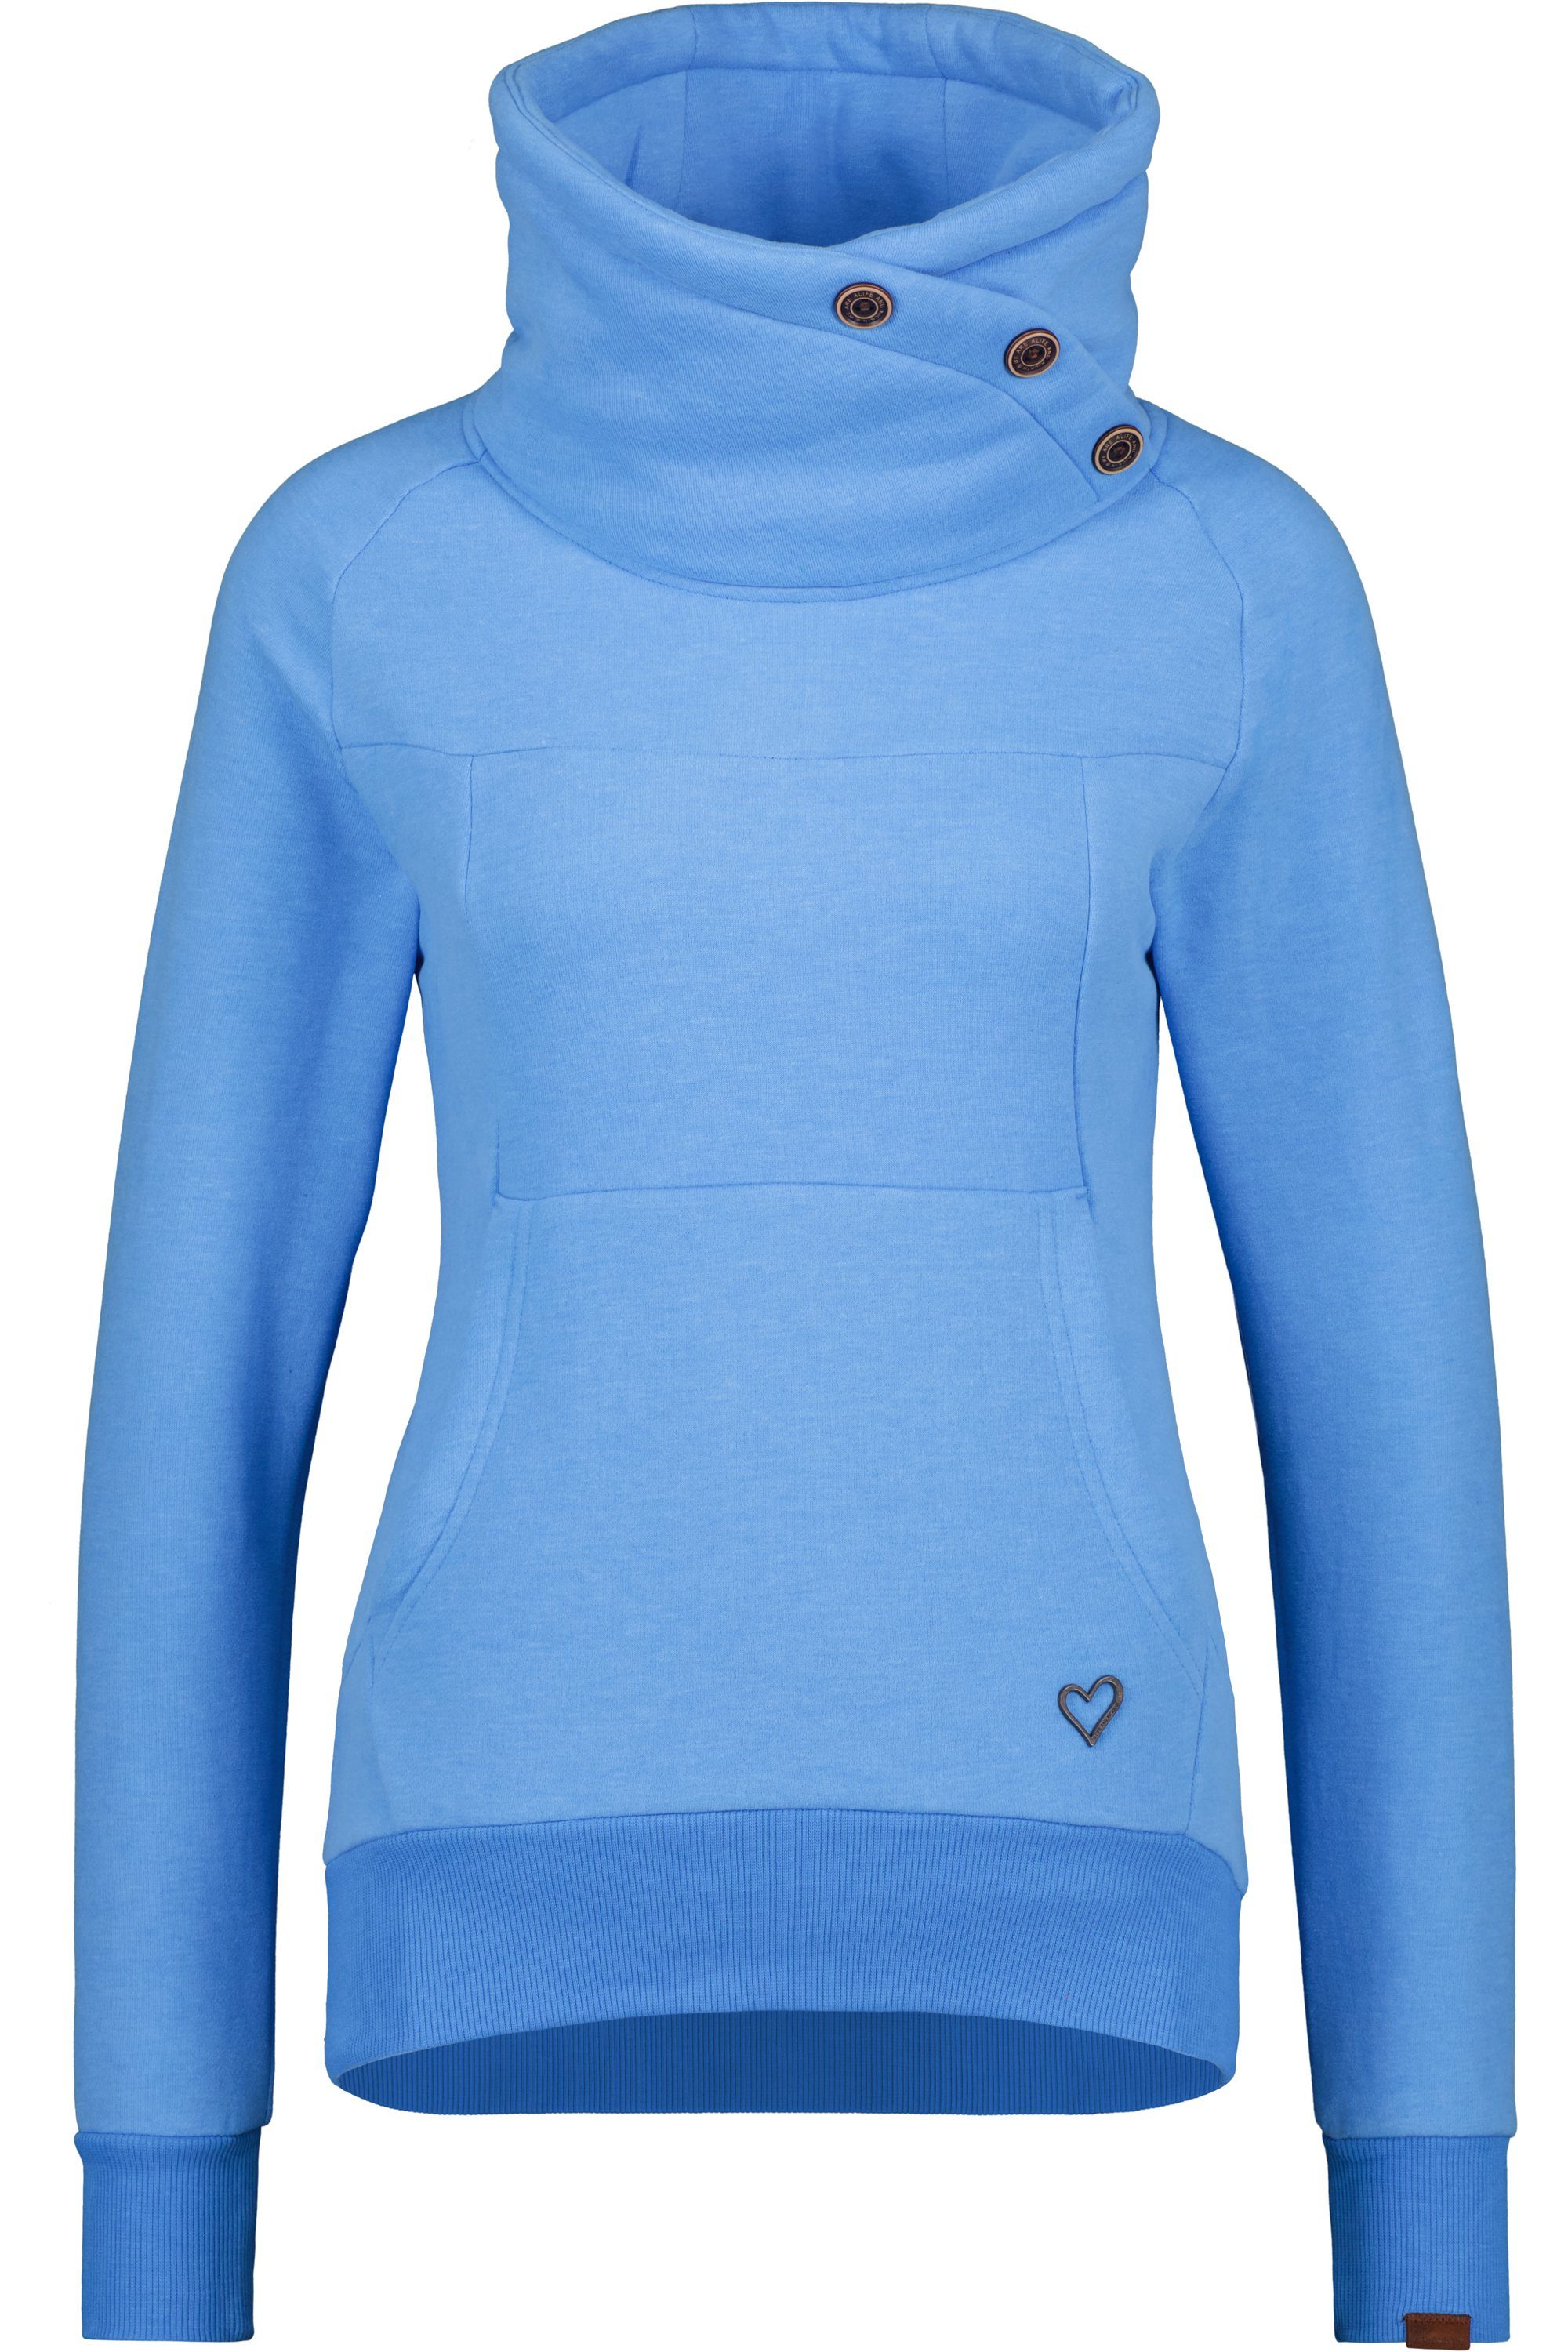 Alife Sweatshirt Sweatshirt VioletAK azure Rundhalspullover, melange Pullover A Kickin Damen &